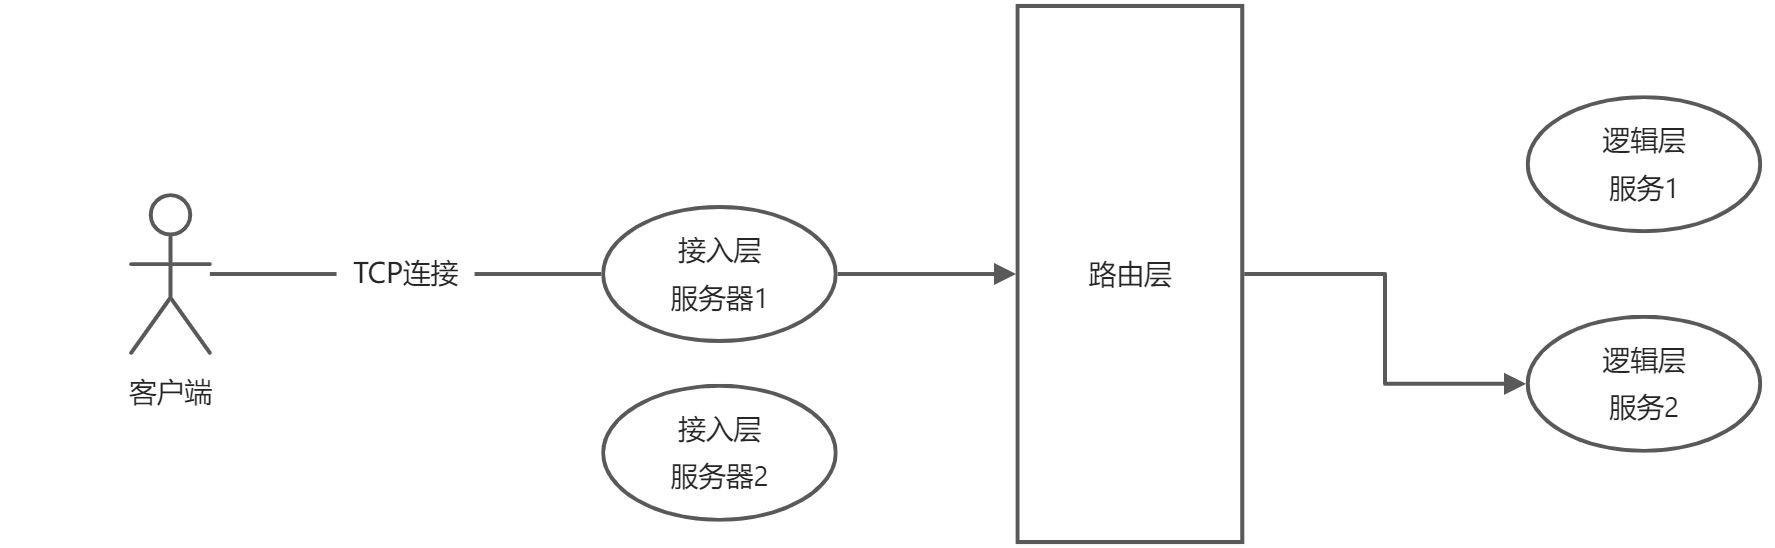 服务端分层模型 - 图2